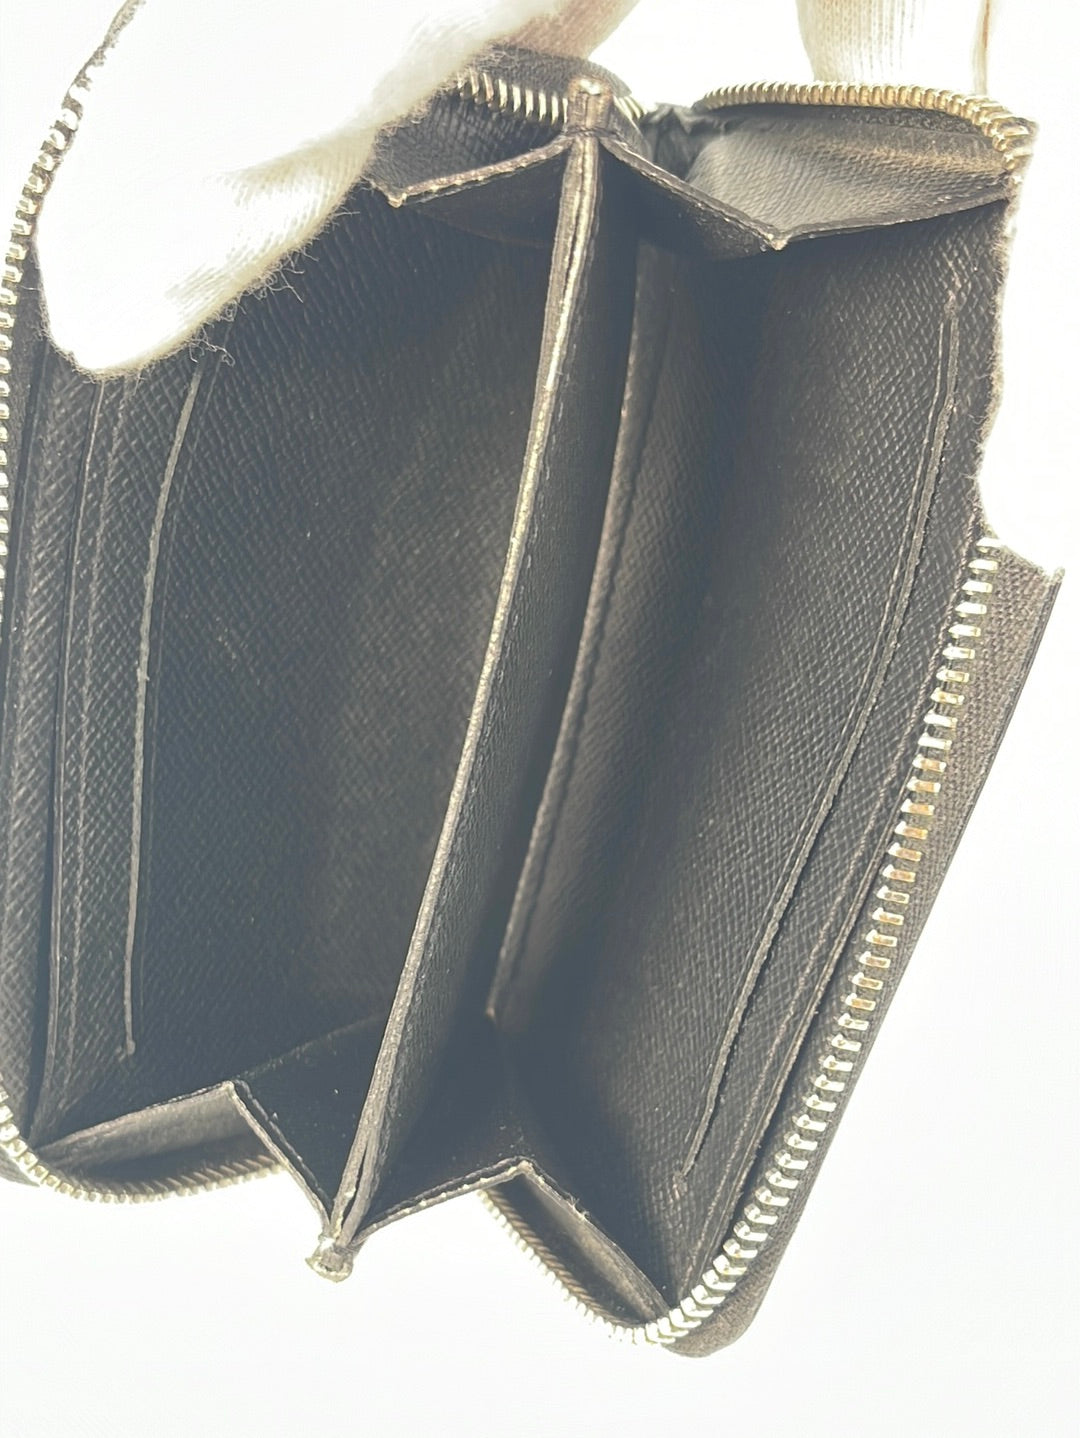 PRELOVED Louis Vuitton Black Taiga Mini Zippy Wallet MI2129 032323